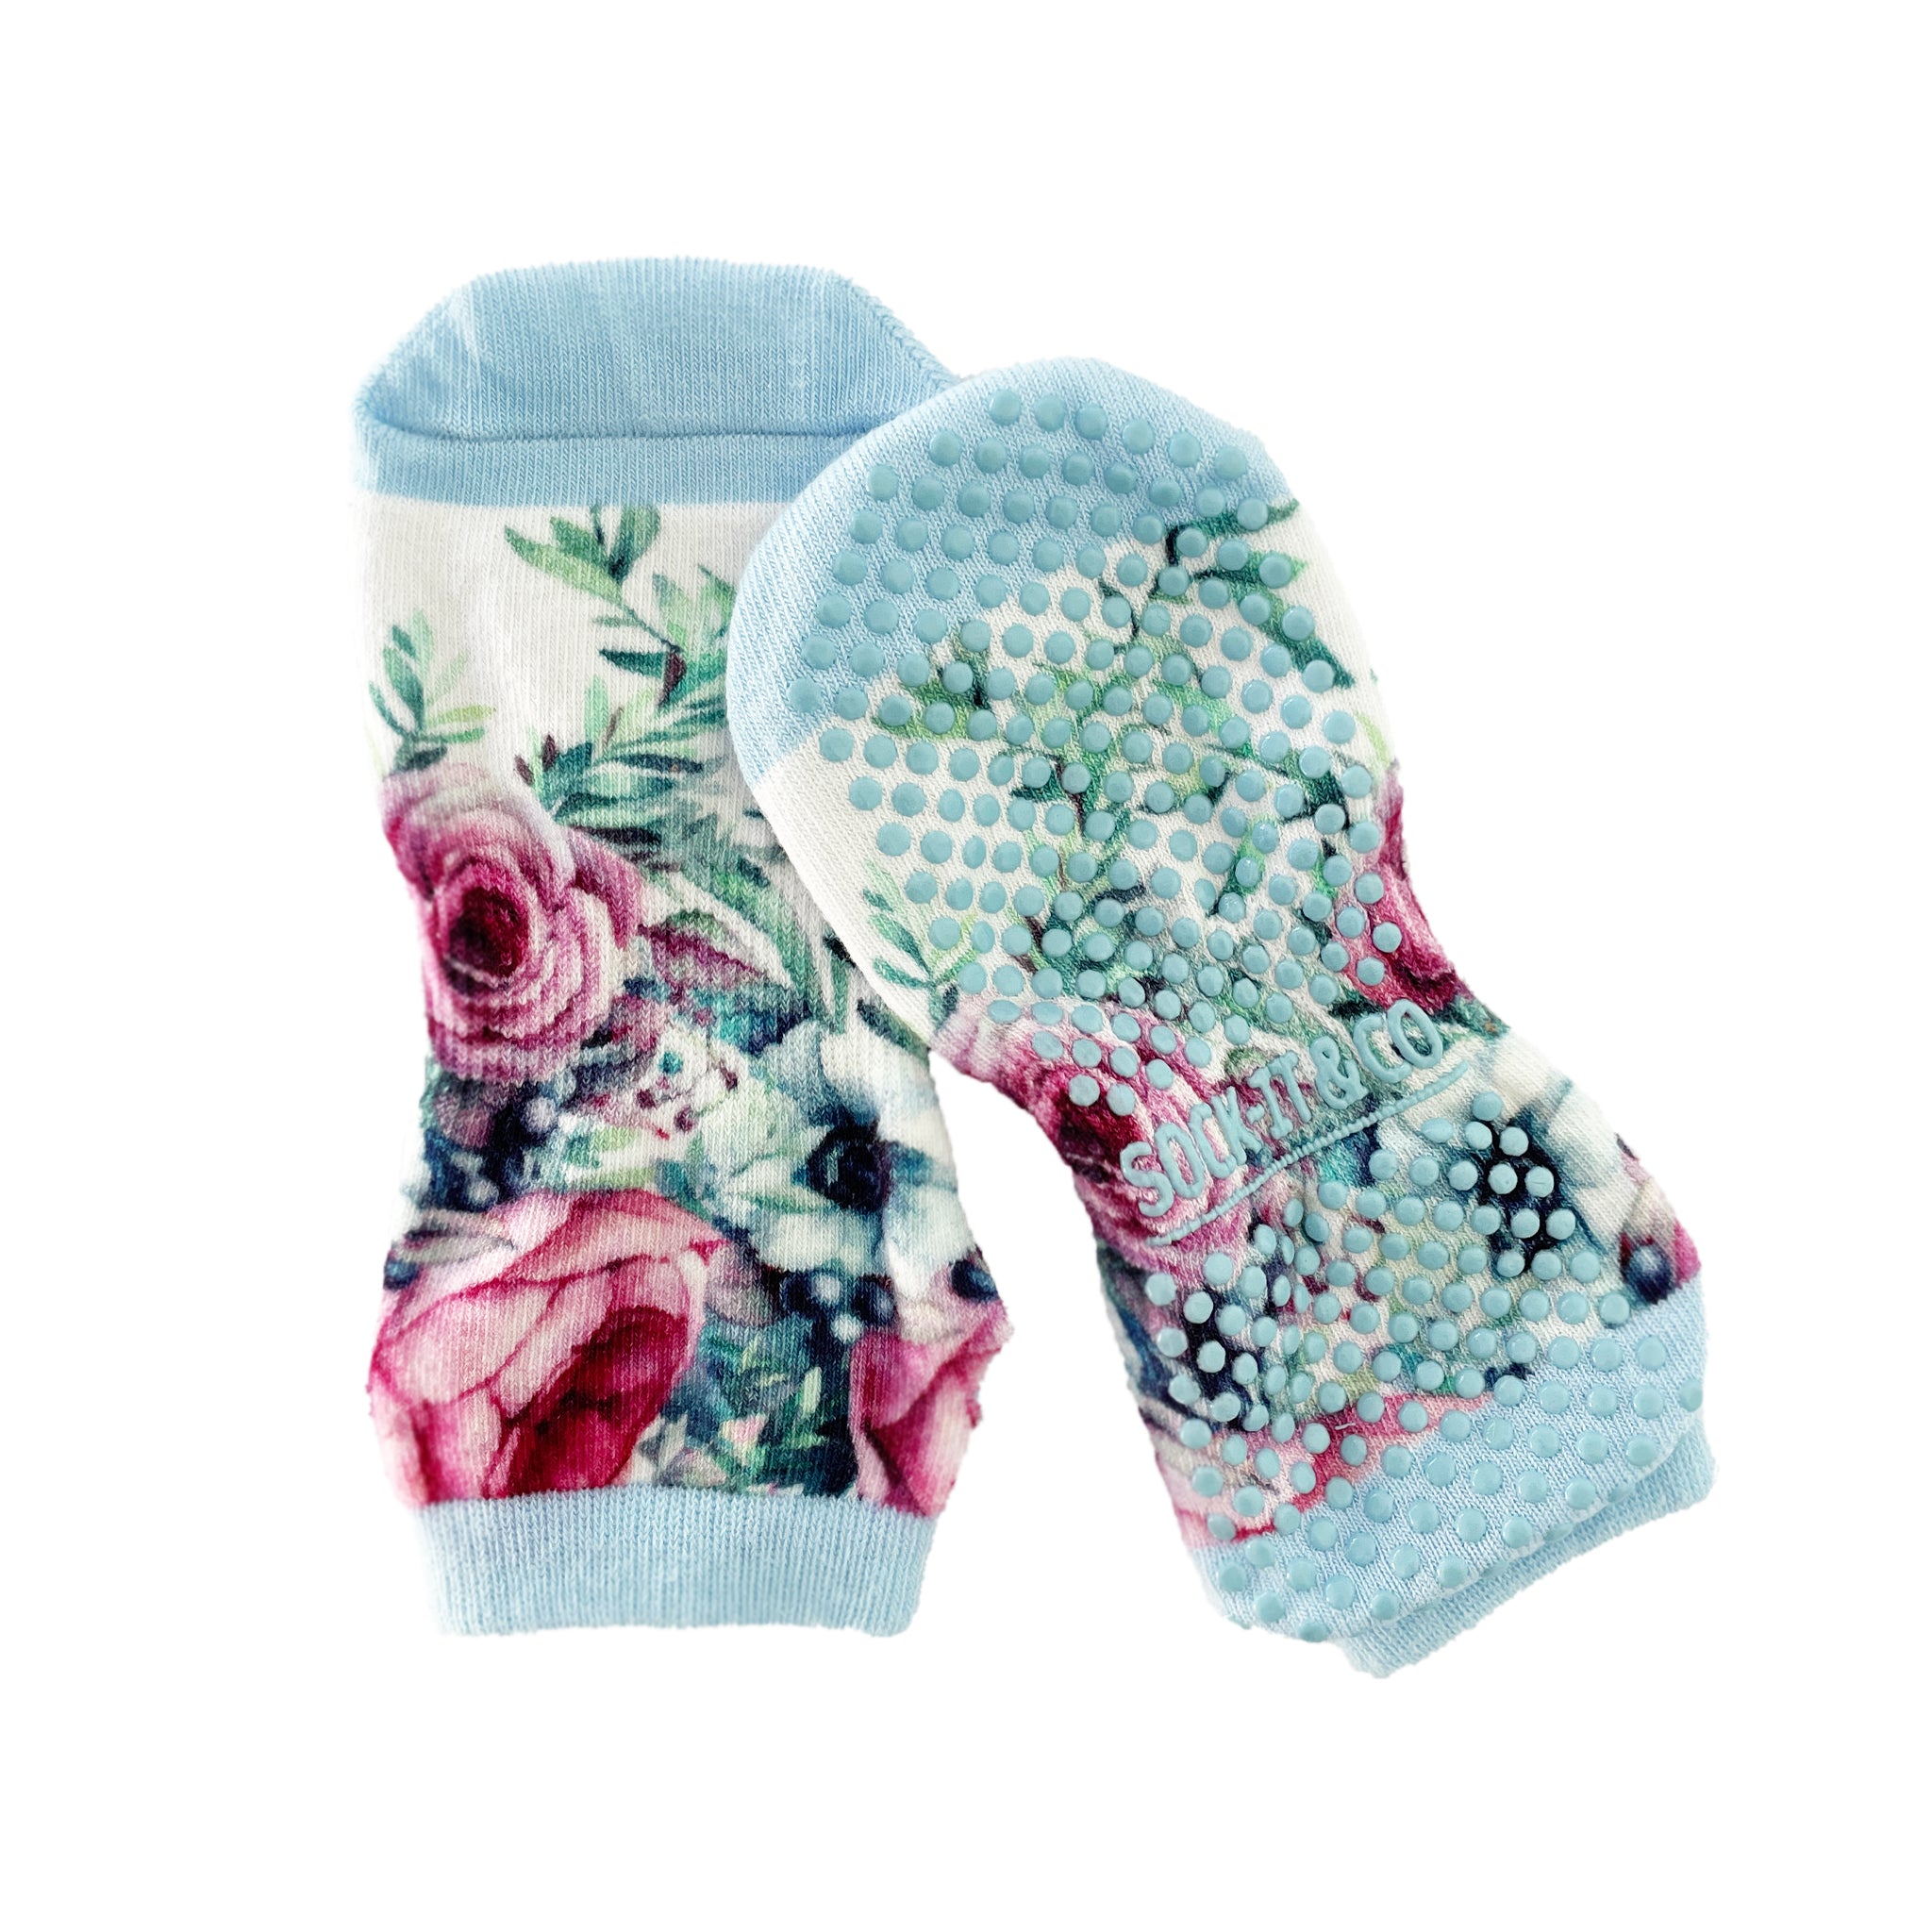 Buy FLORISCA Yoga Socks for Women, Non-Slip Slipper Socks with